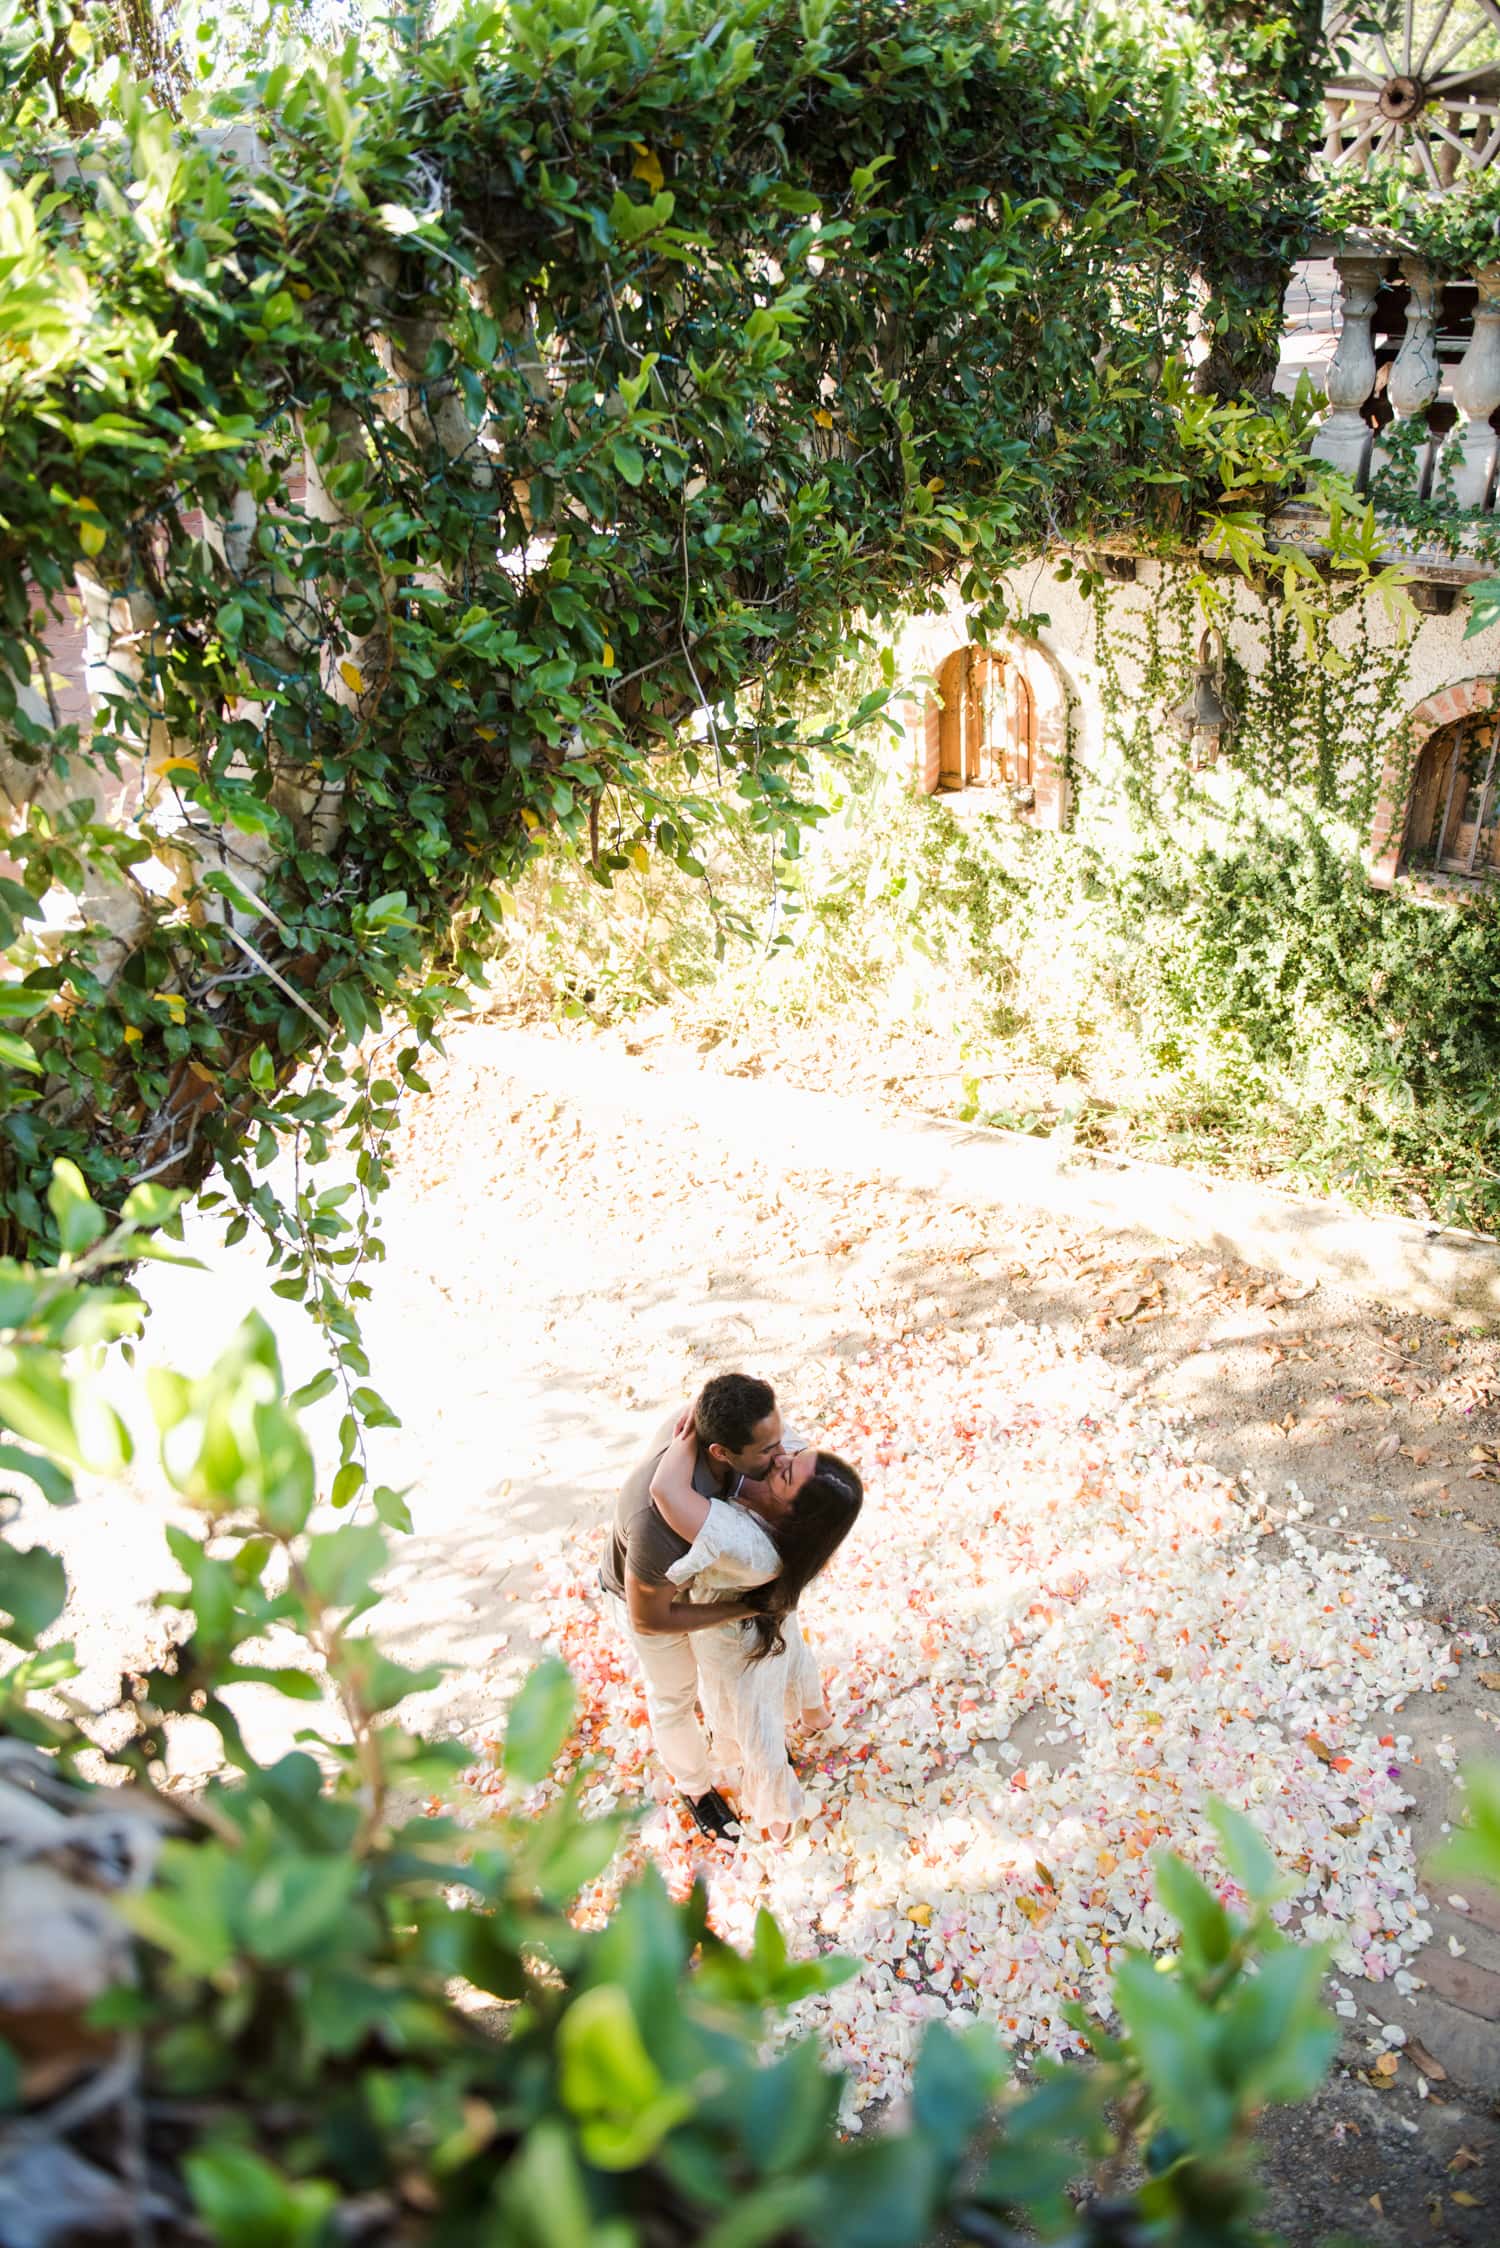 surprise proposal photography at hacienda siesta alegre a wedding venue in rio grande puerto rico